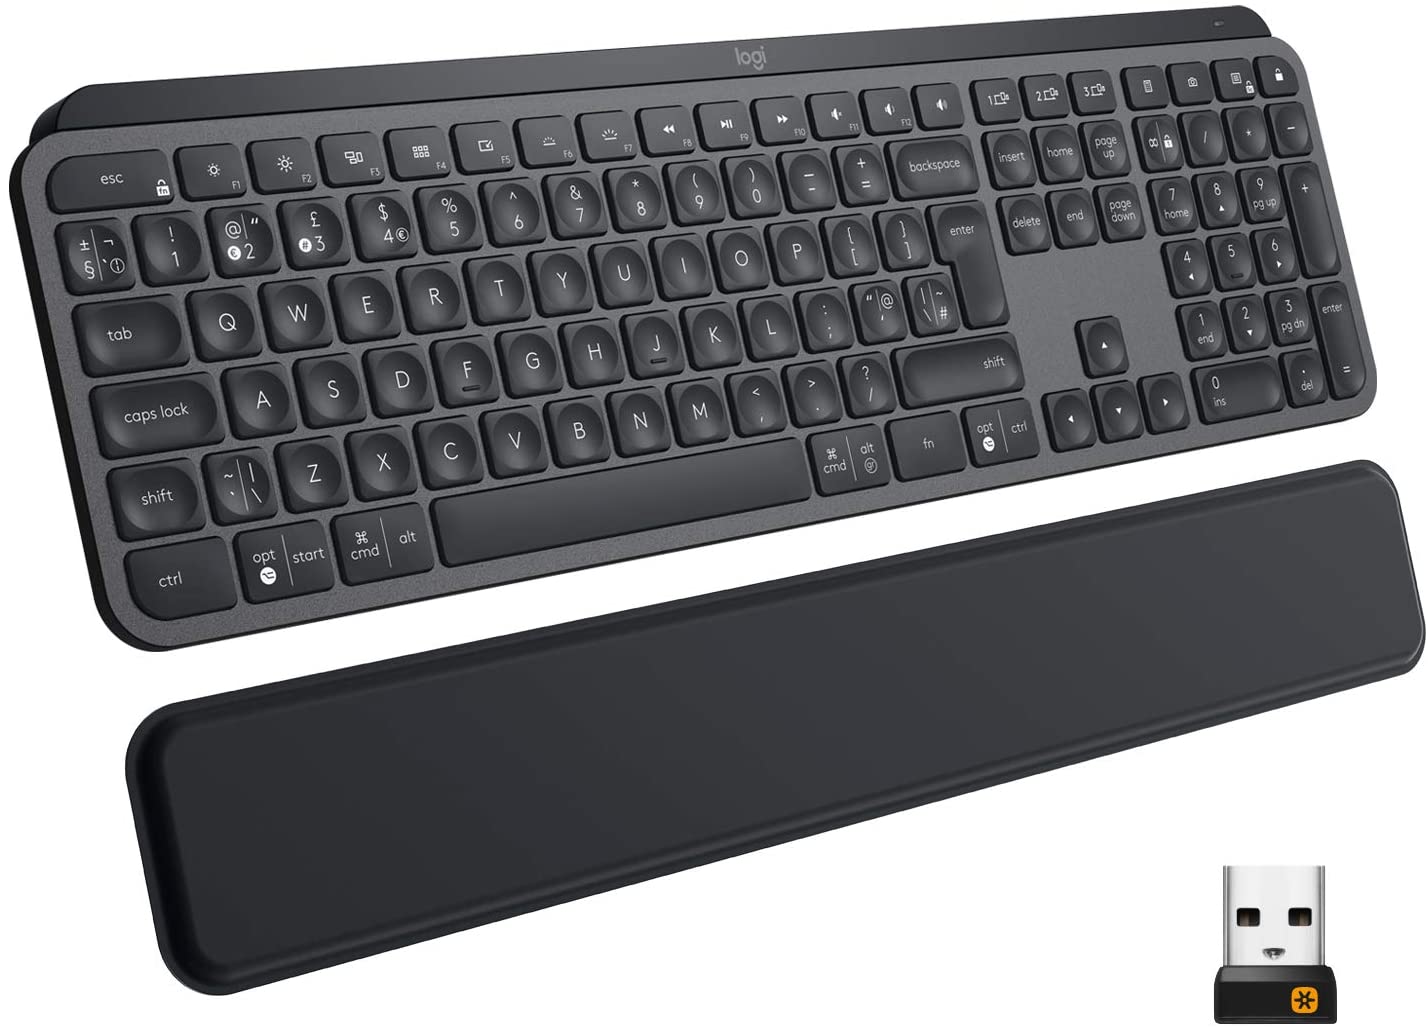 کیبورد بی سیم لاجیتک Logitech MX Keys Plus Advanced Wireless Illuminated Keyboard - ارسال ۱۰ الی ۱۵ روز کاری